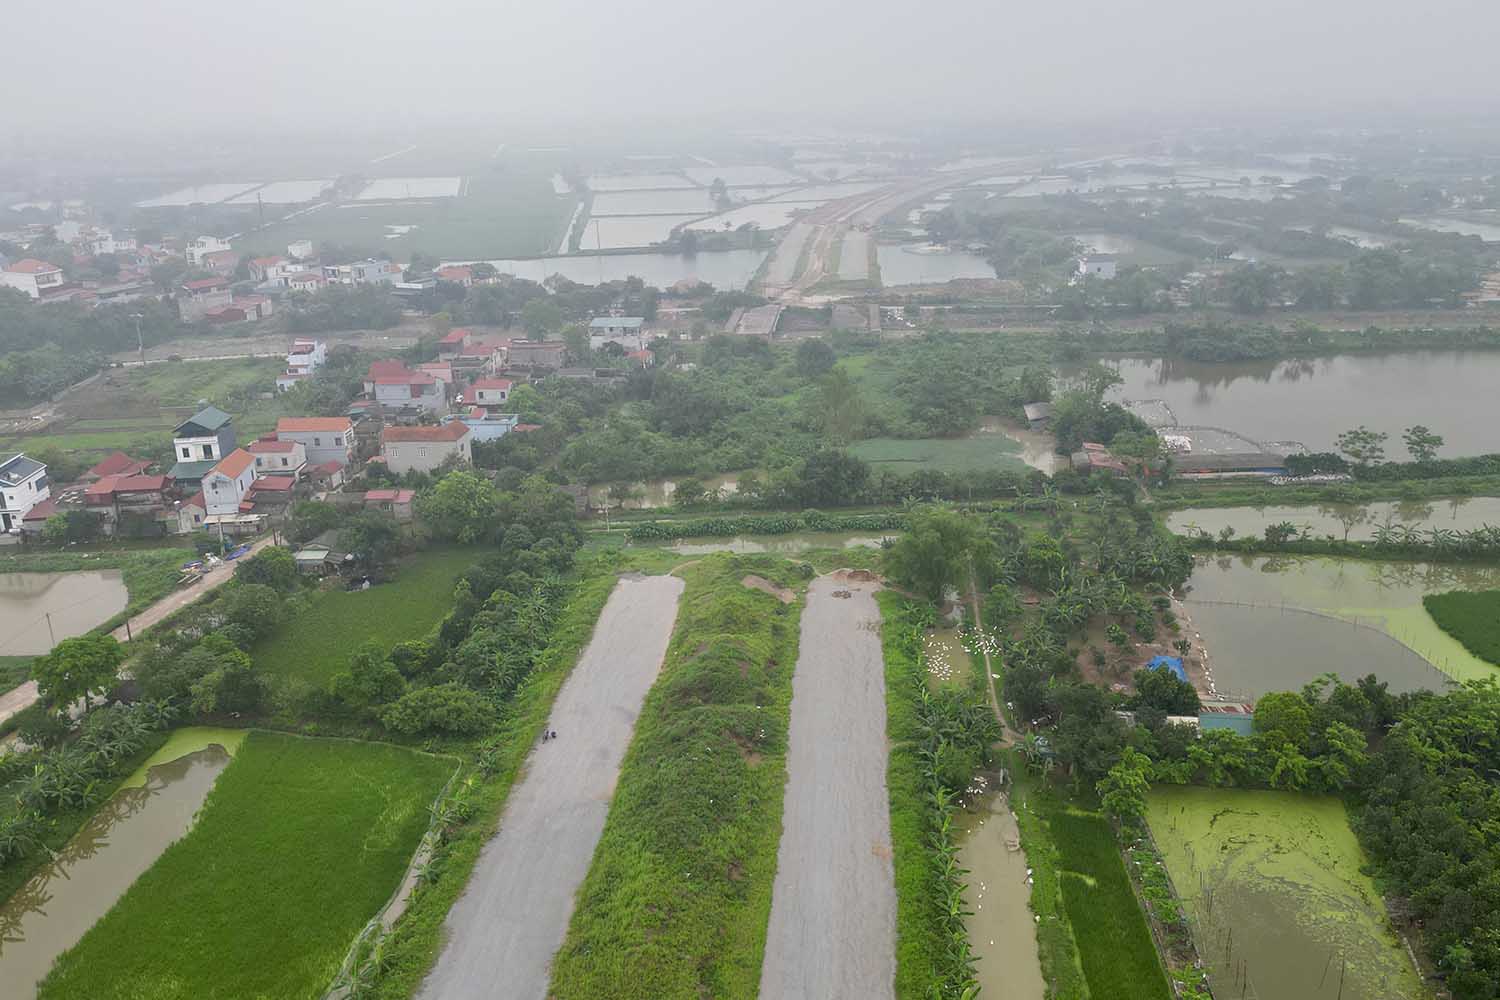 đoạn Km18+700 đang vướng mặt bằng từ năm 2018 thuộc xã Hồng Minh, huyện Phú Xuyên với 53 hộ dân khiến cho việc thi công bị đứt đoạn. Ảnh: Hữu Chánh